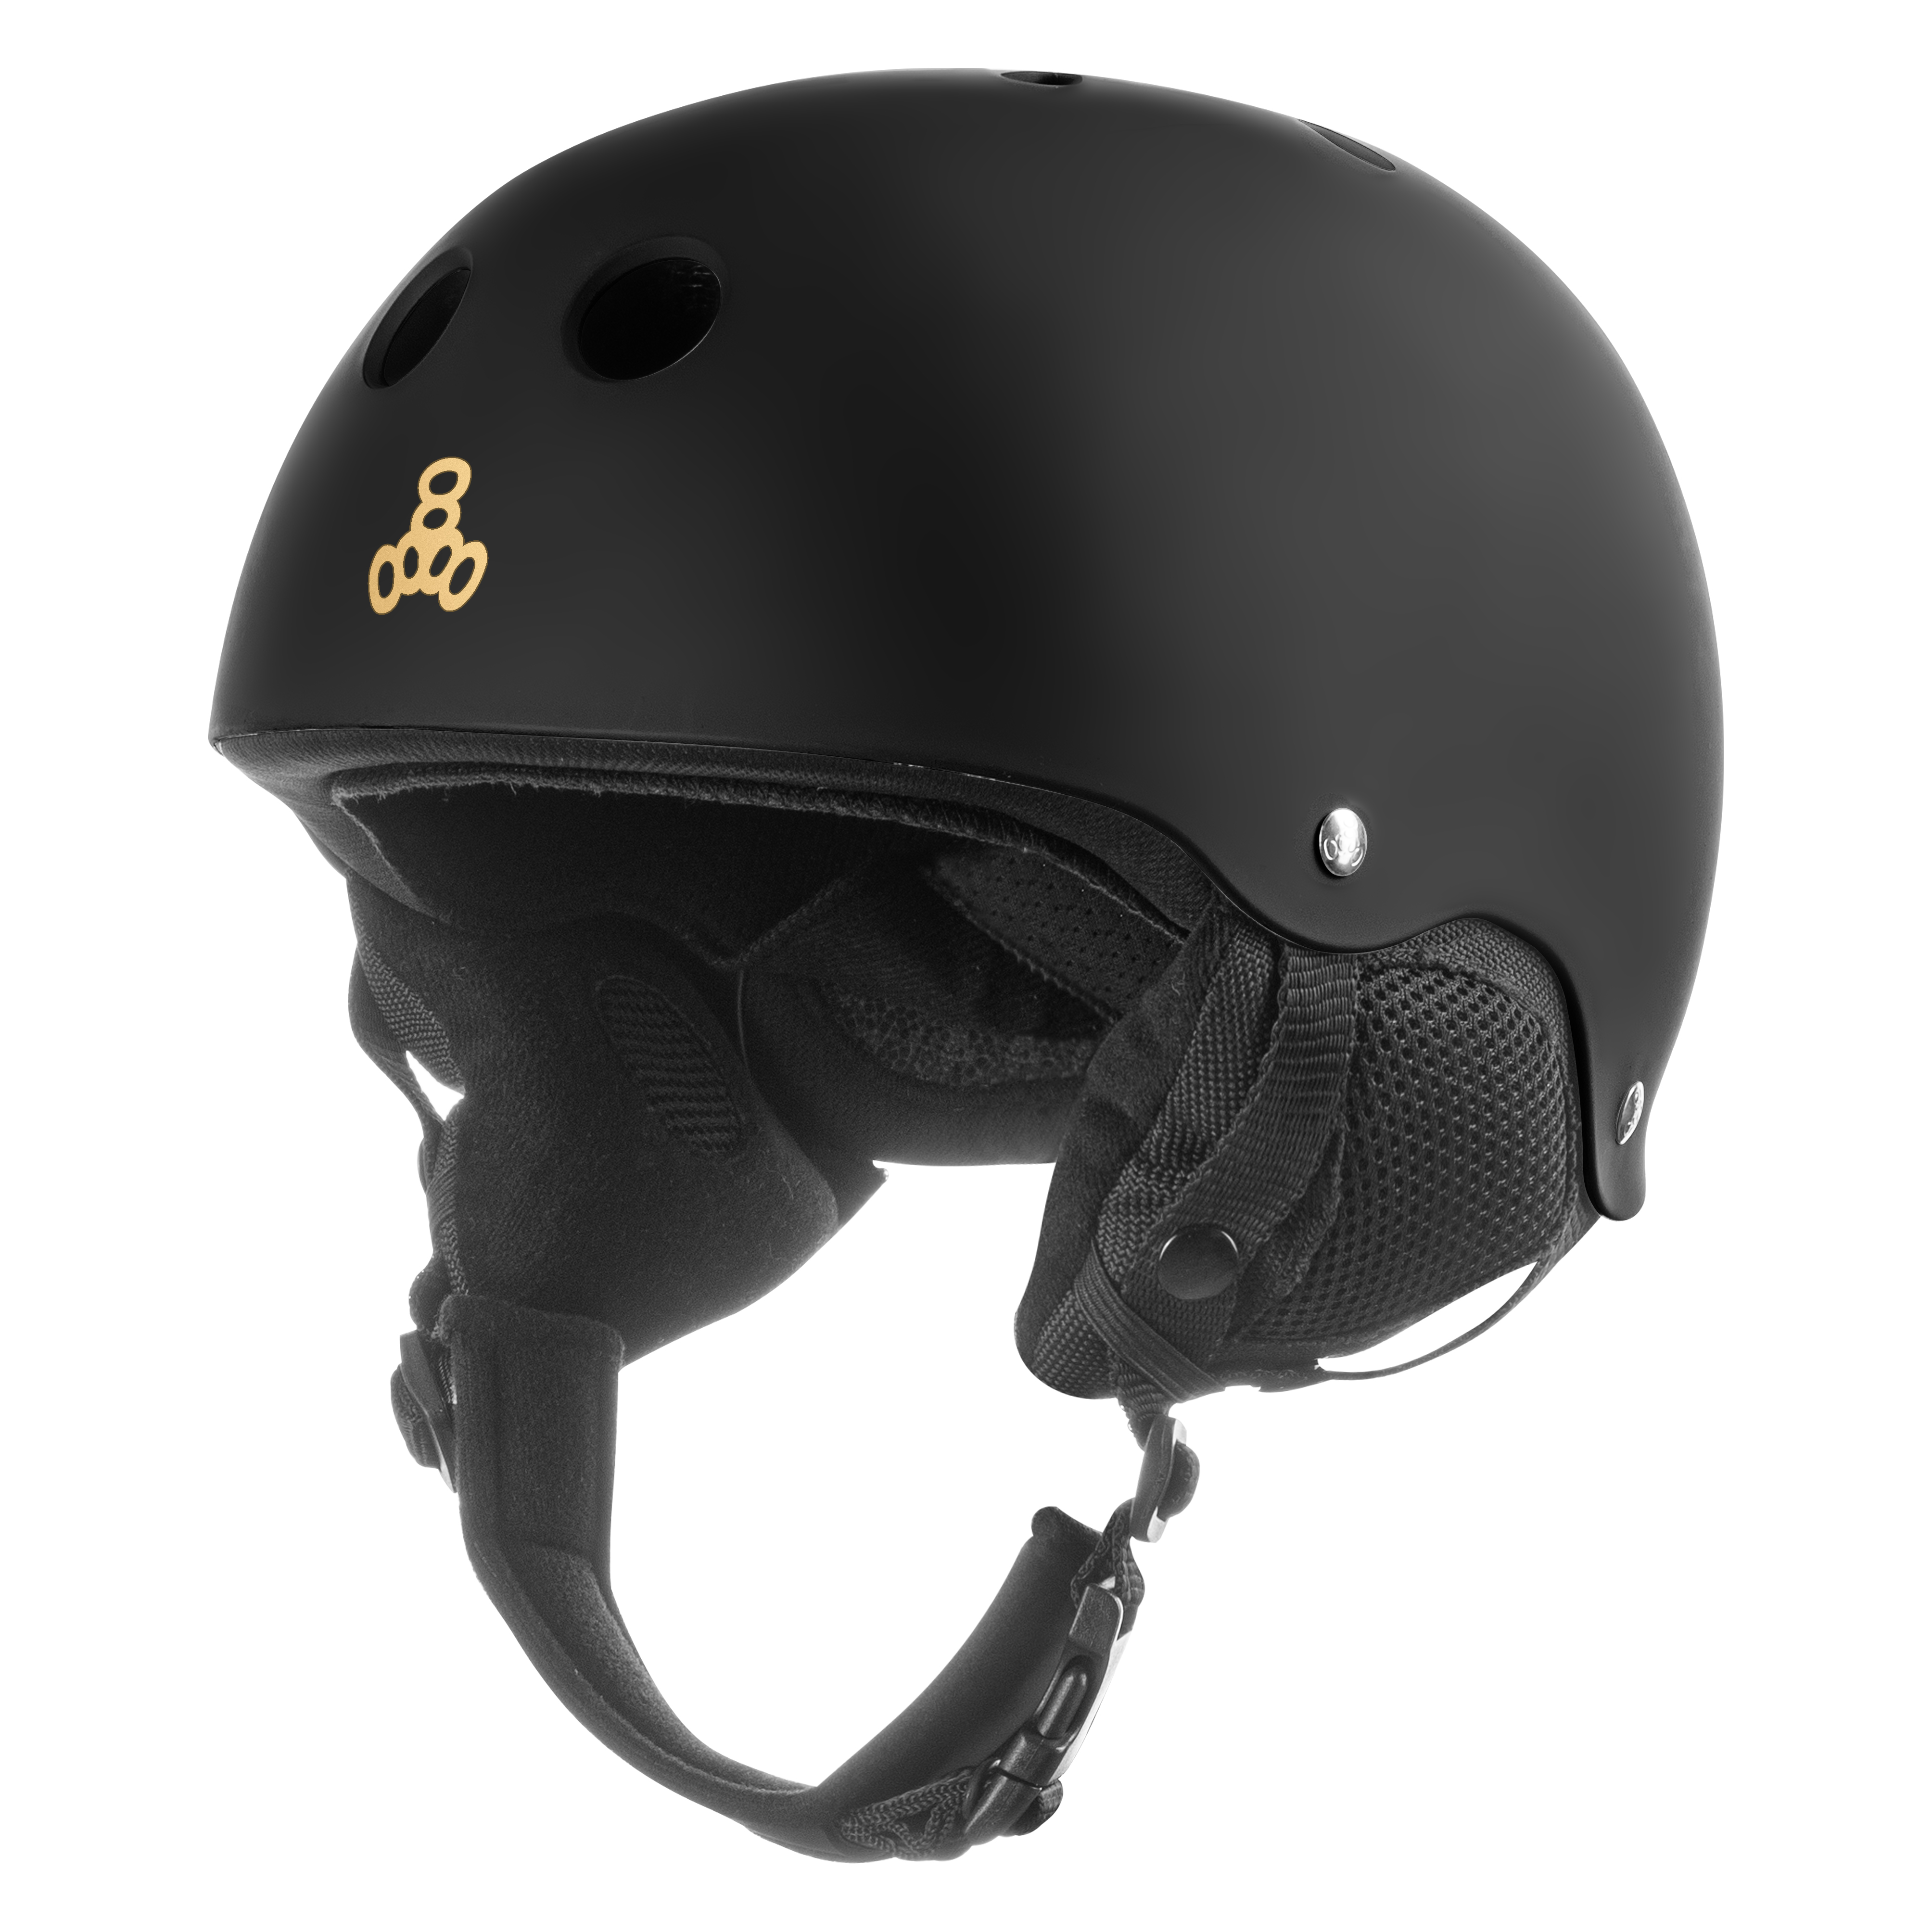 Шлем для сноубординга Triple8 Old School Snow Black Rubber (XS)